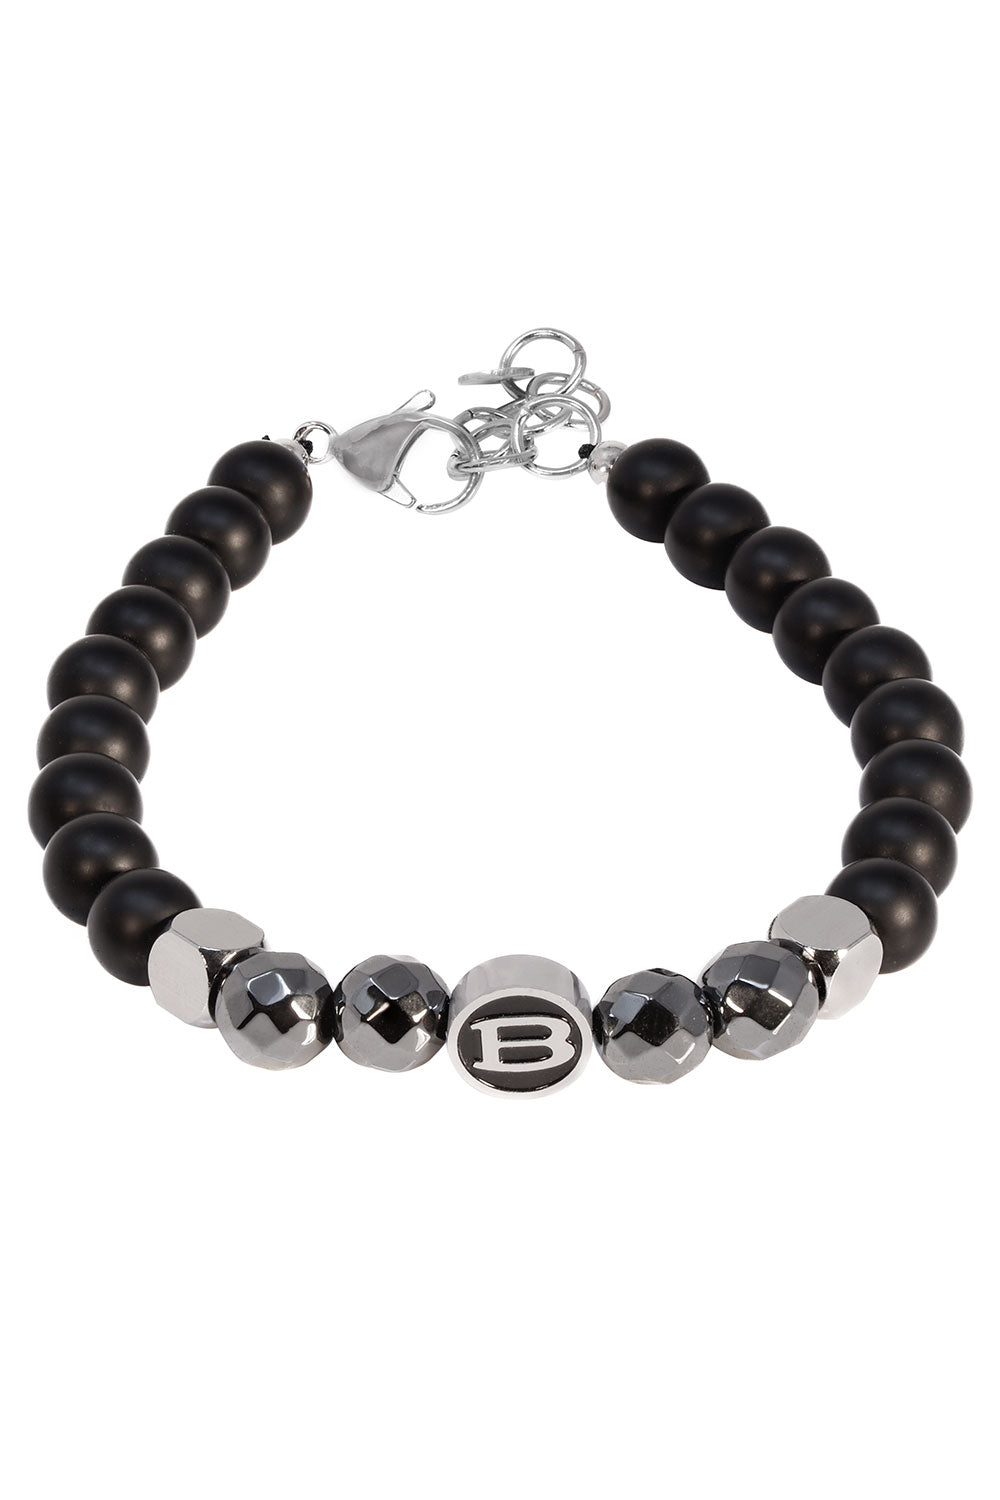 Barabas Unisex Obsidian Hematite Luxury Bangle Bracelets 4BB03 Black